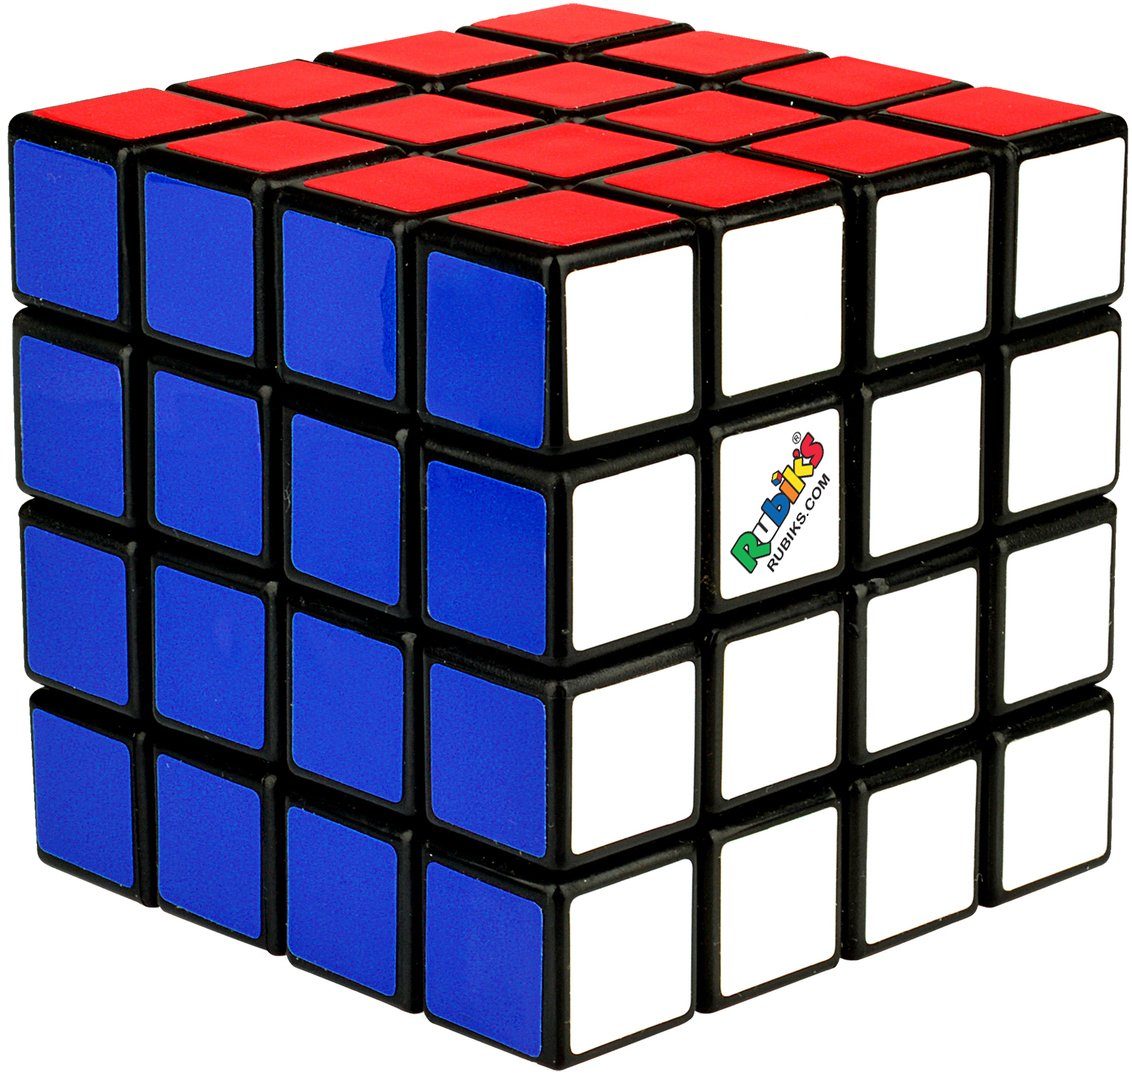 22 Knobelspiel Rubik's Master Thinkfun® Spiel,